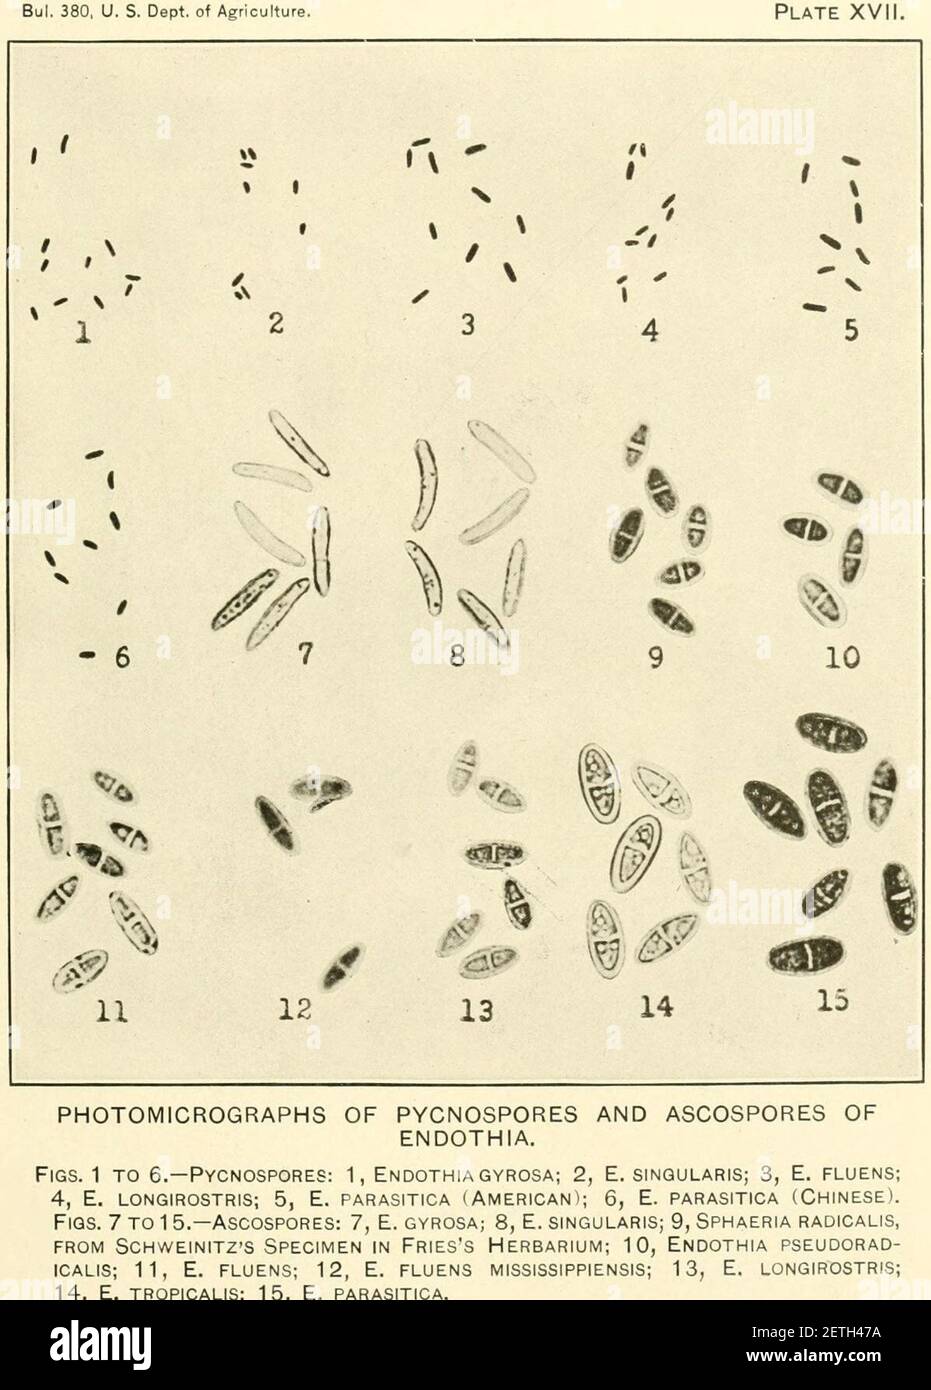 Photomicrographs of pycnospores and ascospores of Endothia. Stock Photo